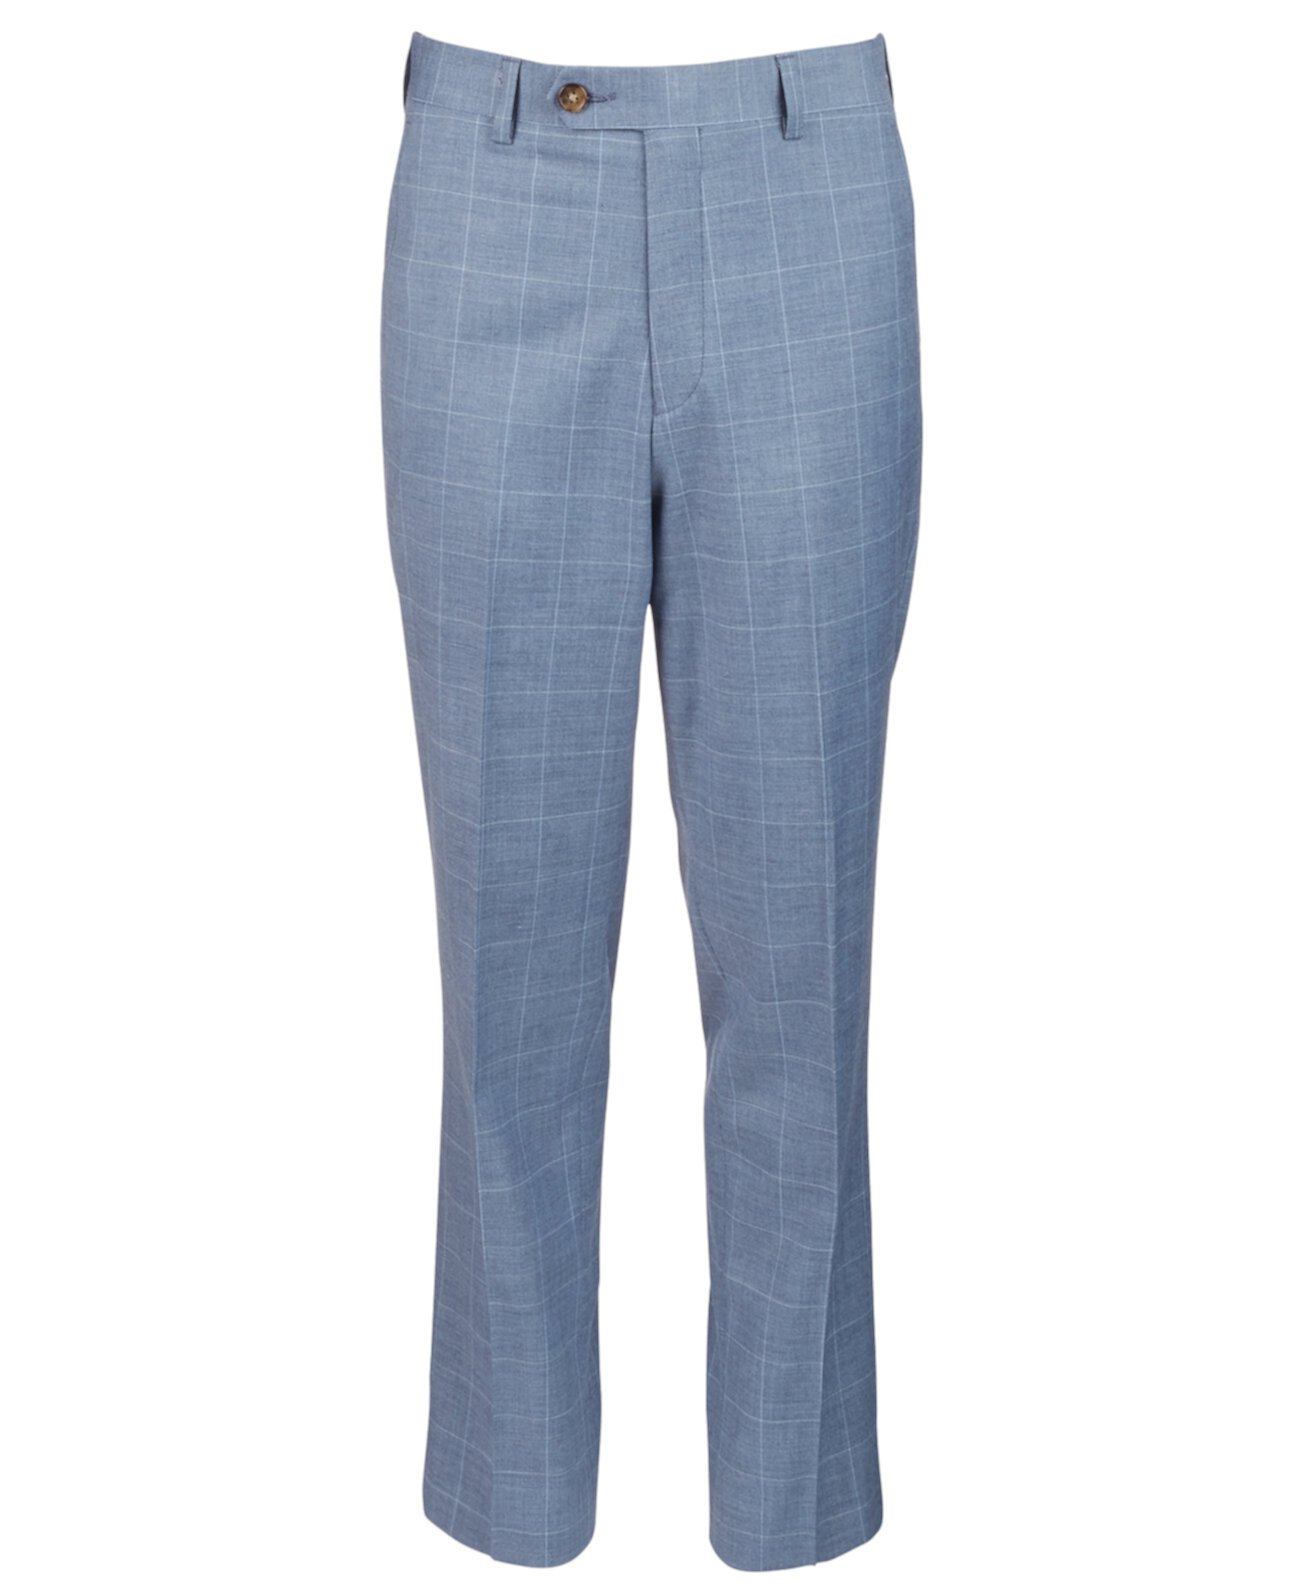 Синие брюки классического кроя с оконным стеклом для больших мальчиков Ralph Lauren